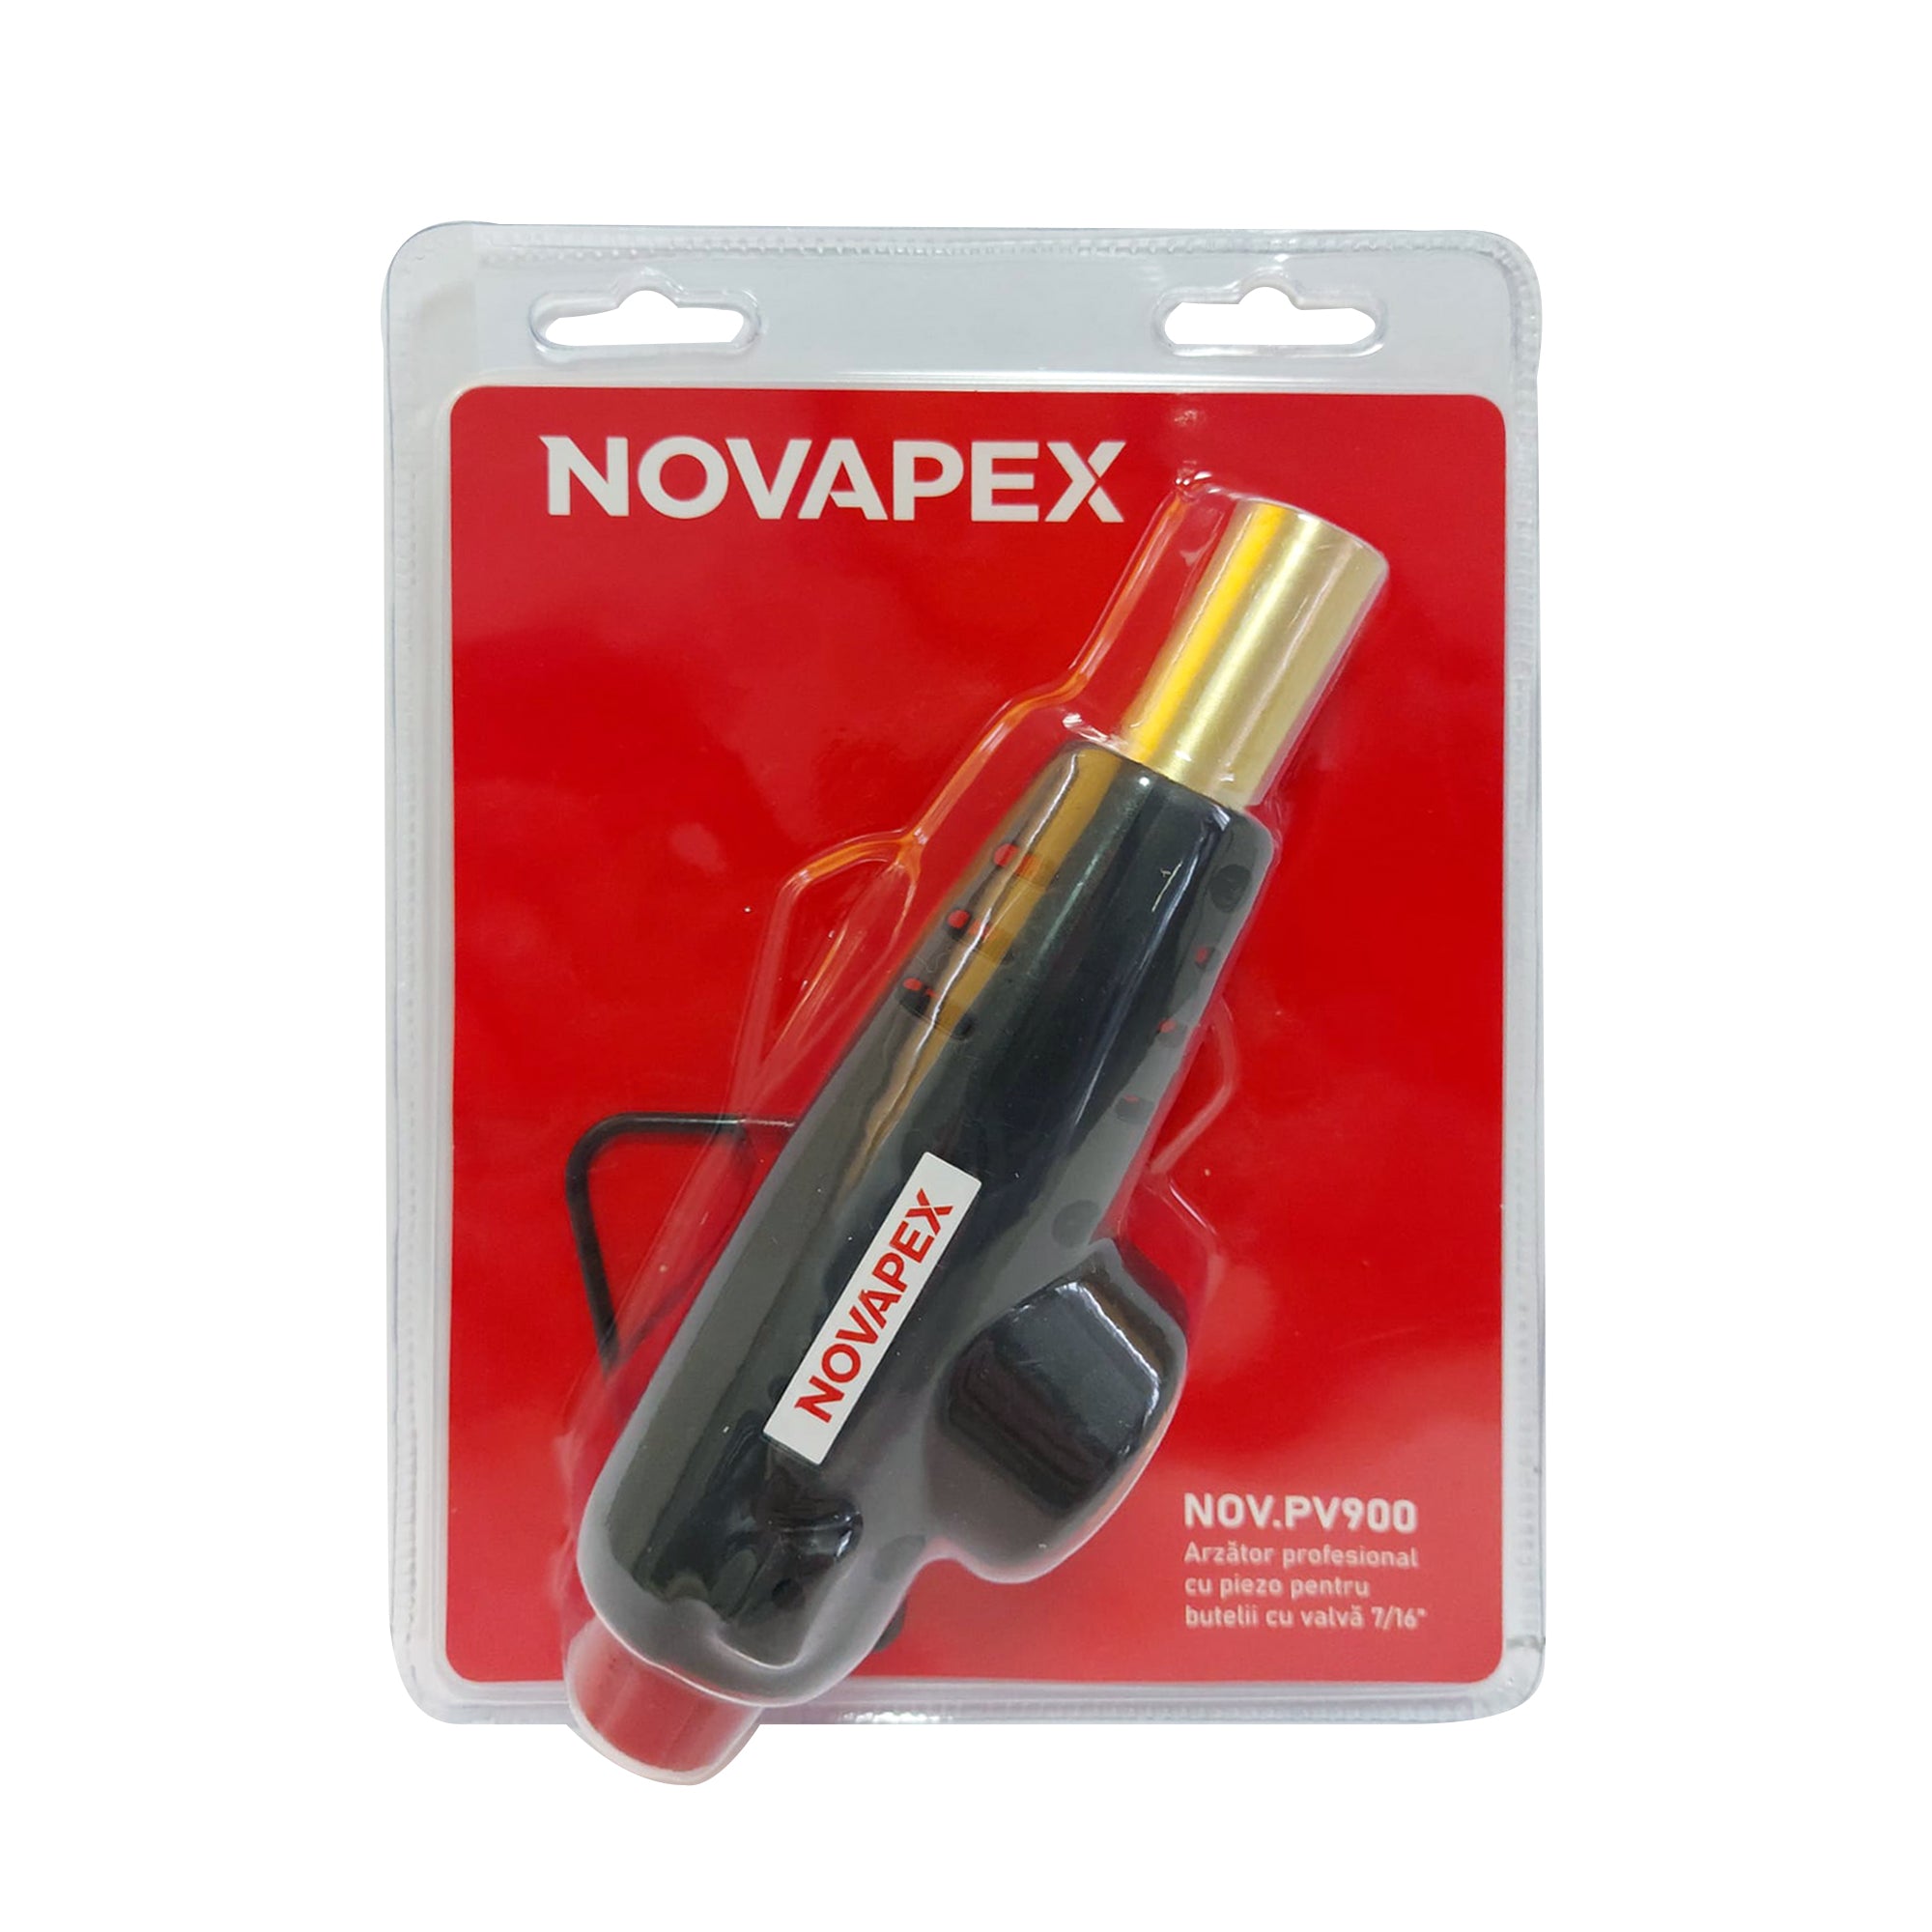 Arzator profesional NOVAPEX PV900 pentru butelii cu valva 7/16'' cu piezo